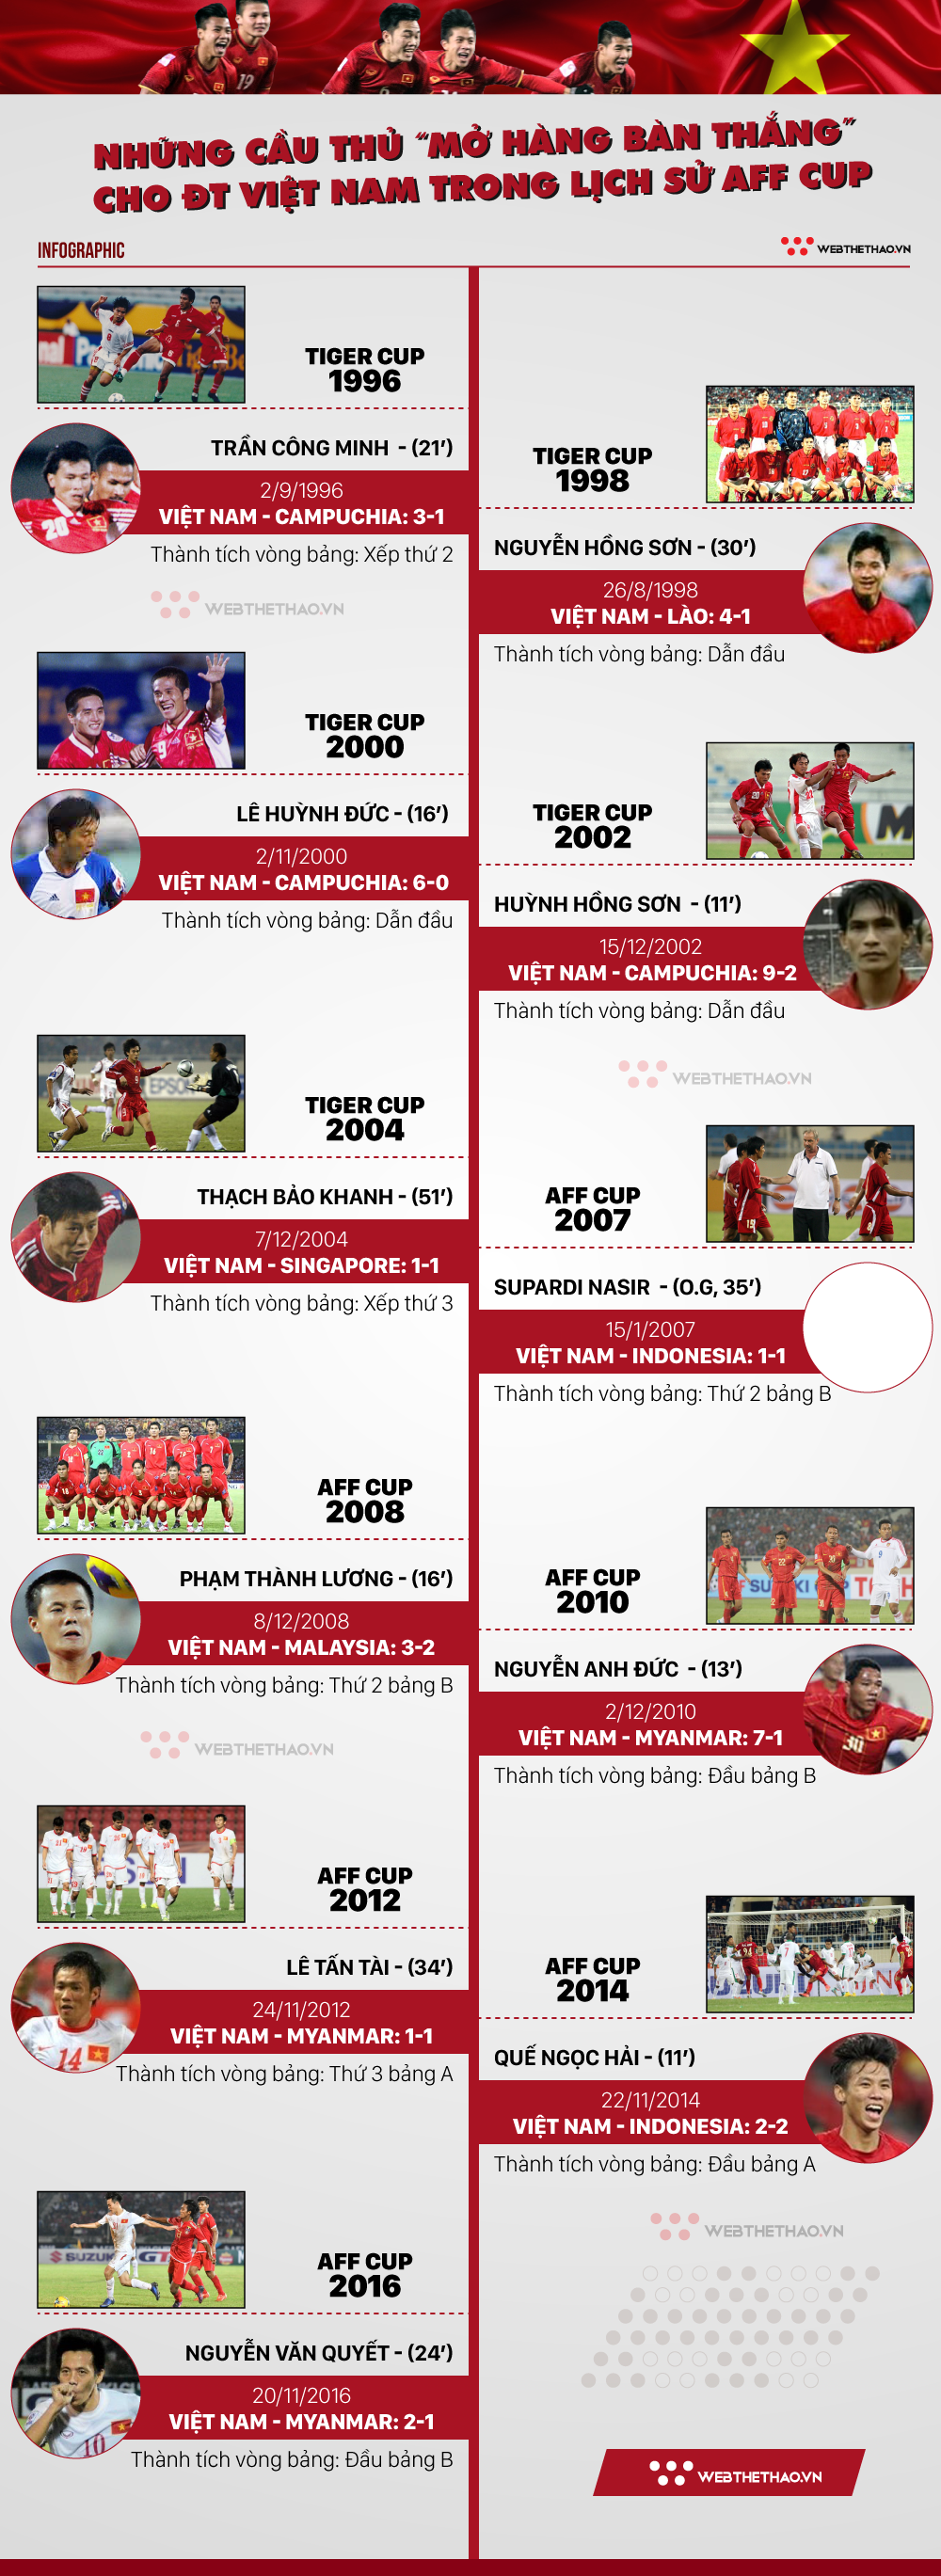 Infographic: Những ngôi sao mở hàng bàn thắng cho ĐT Việt Nam tại các kỳ AFF Cup  - Ảnh 1.